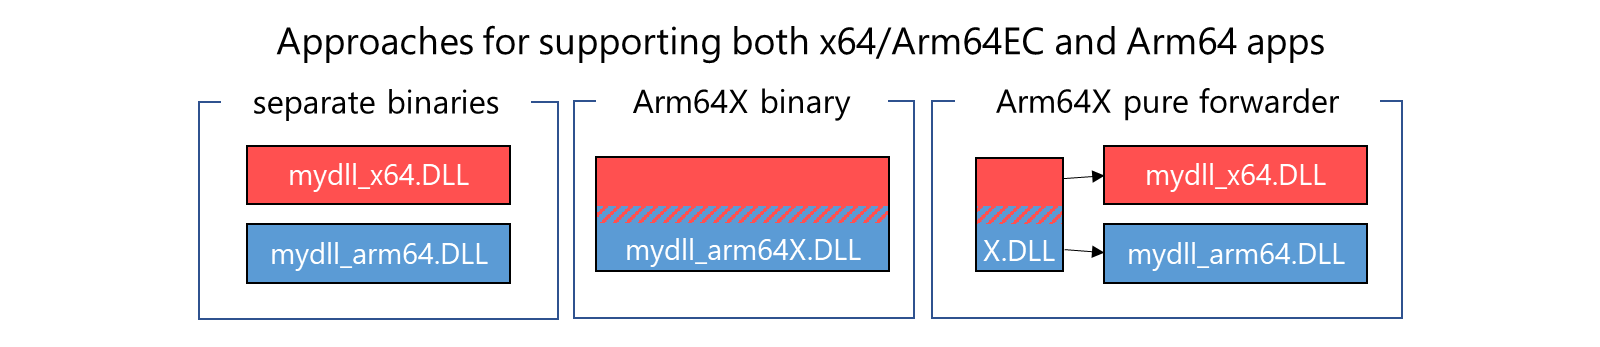 支持应用独立二进制文件的三种方法：Arm64x 二进制文件、将 x64/Arm64EC 与 Arm64 二进制文件相结合的 Arm64X 纯转发器